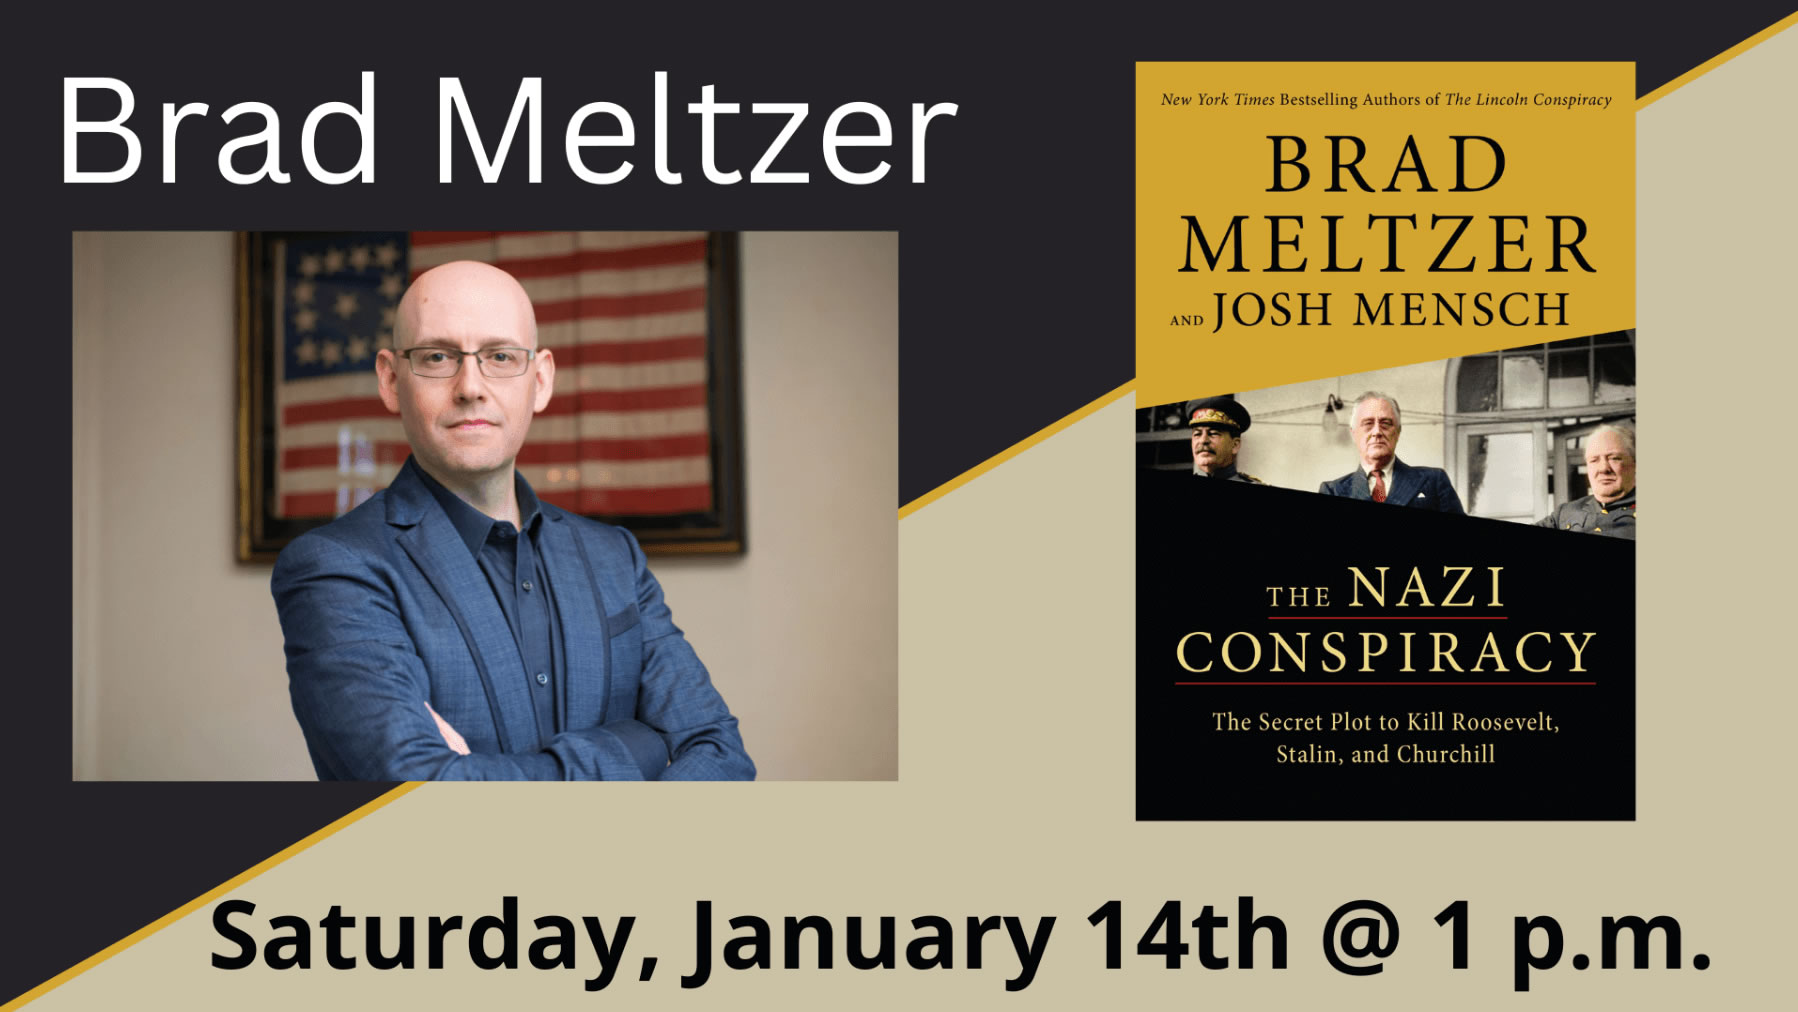 Brad Meltzer presents The Nazi Conspiracy